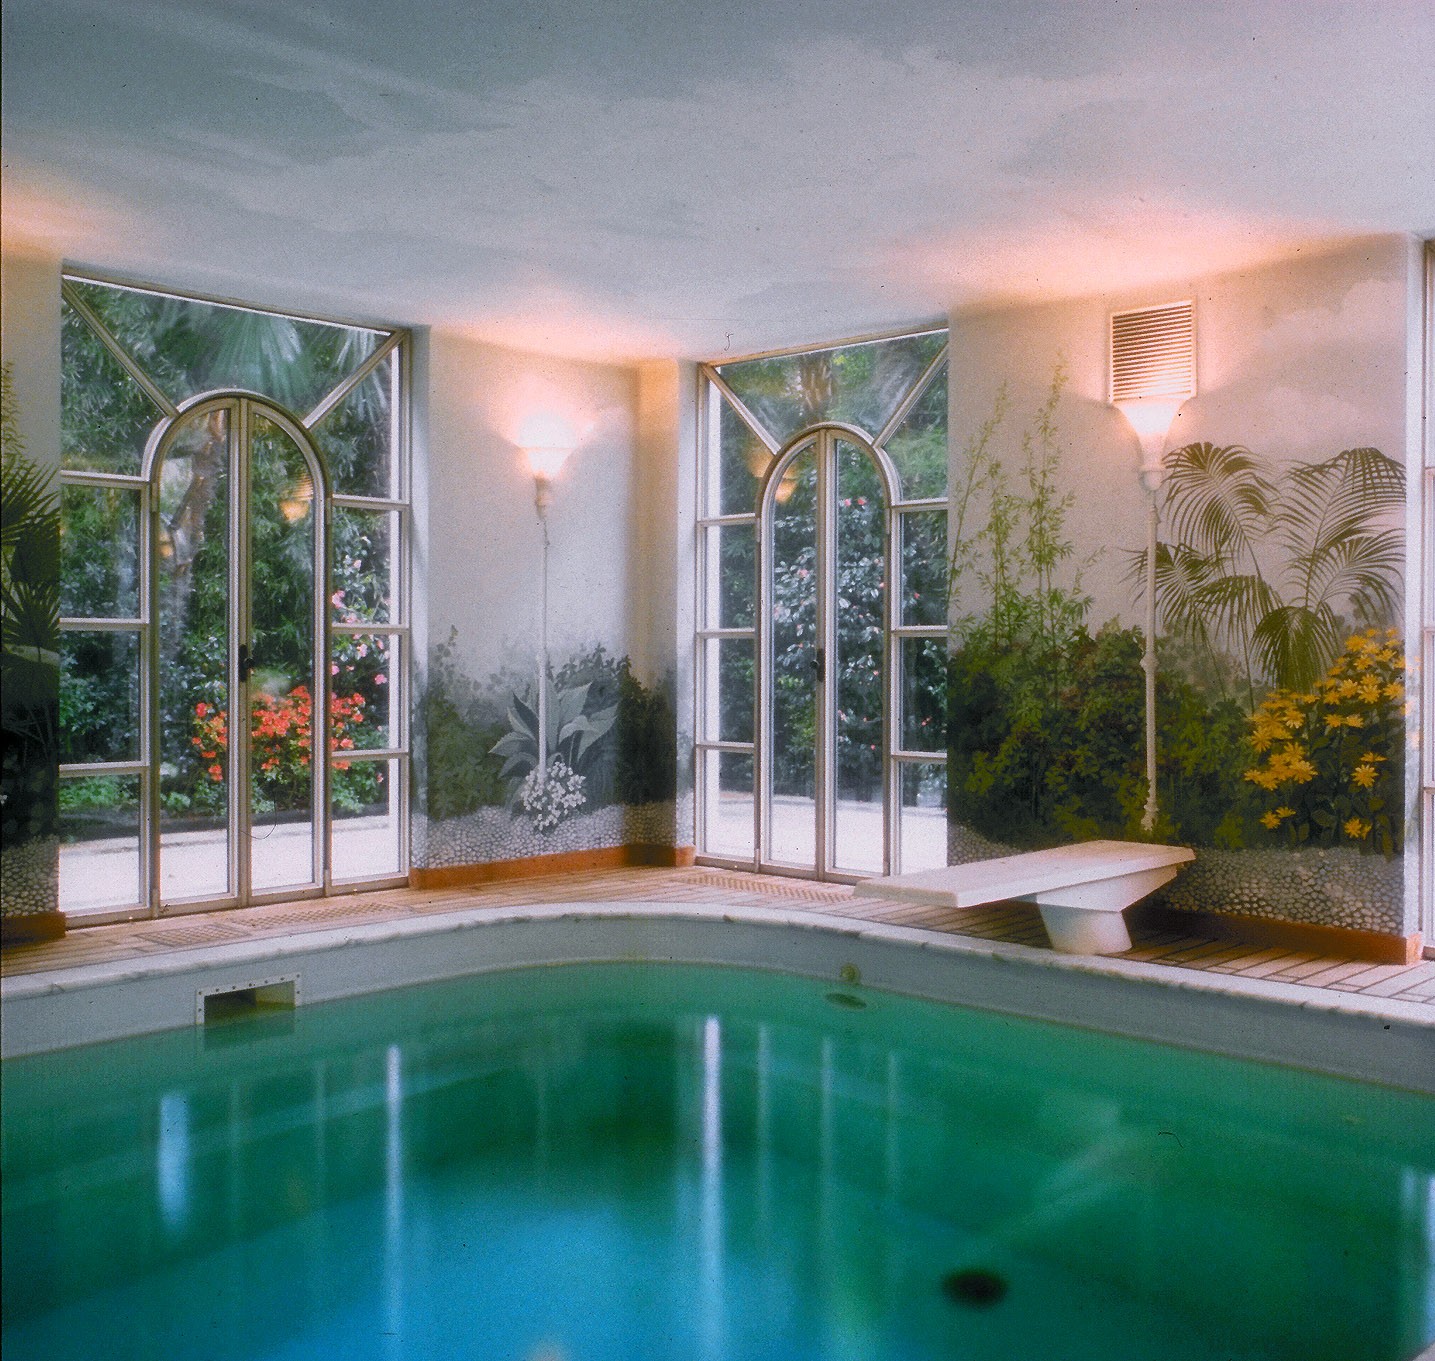 A pool facing a florid garden - БАССЕЙНЫ